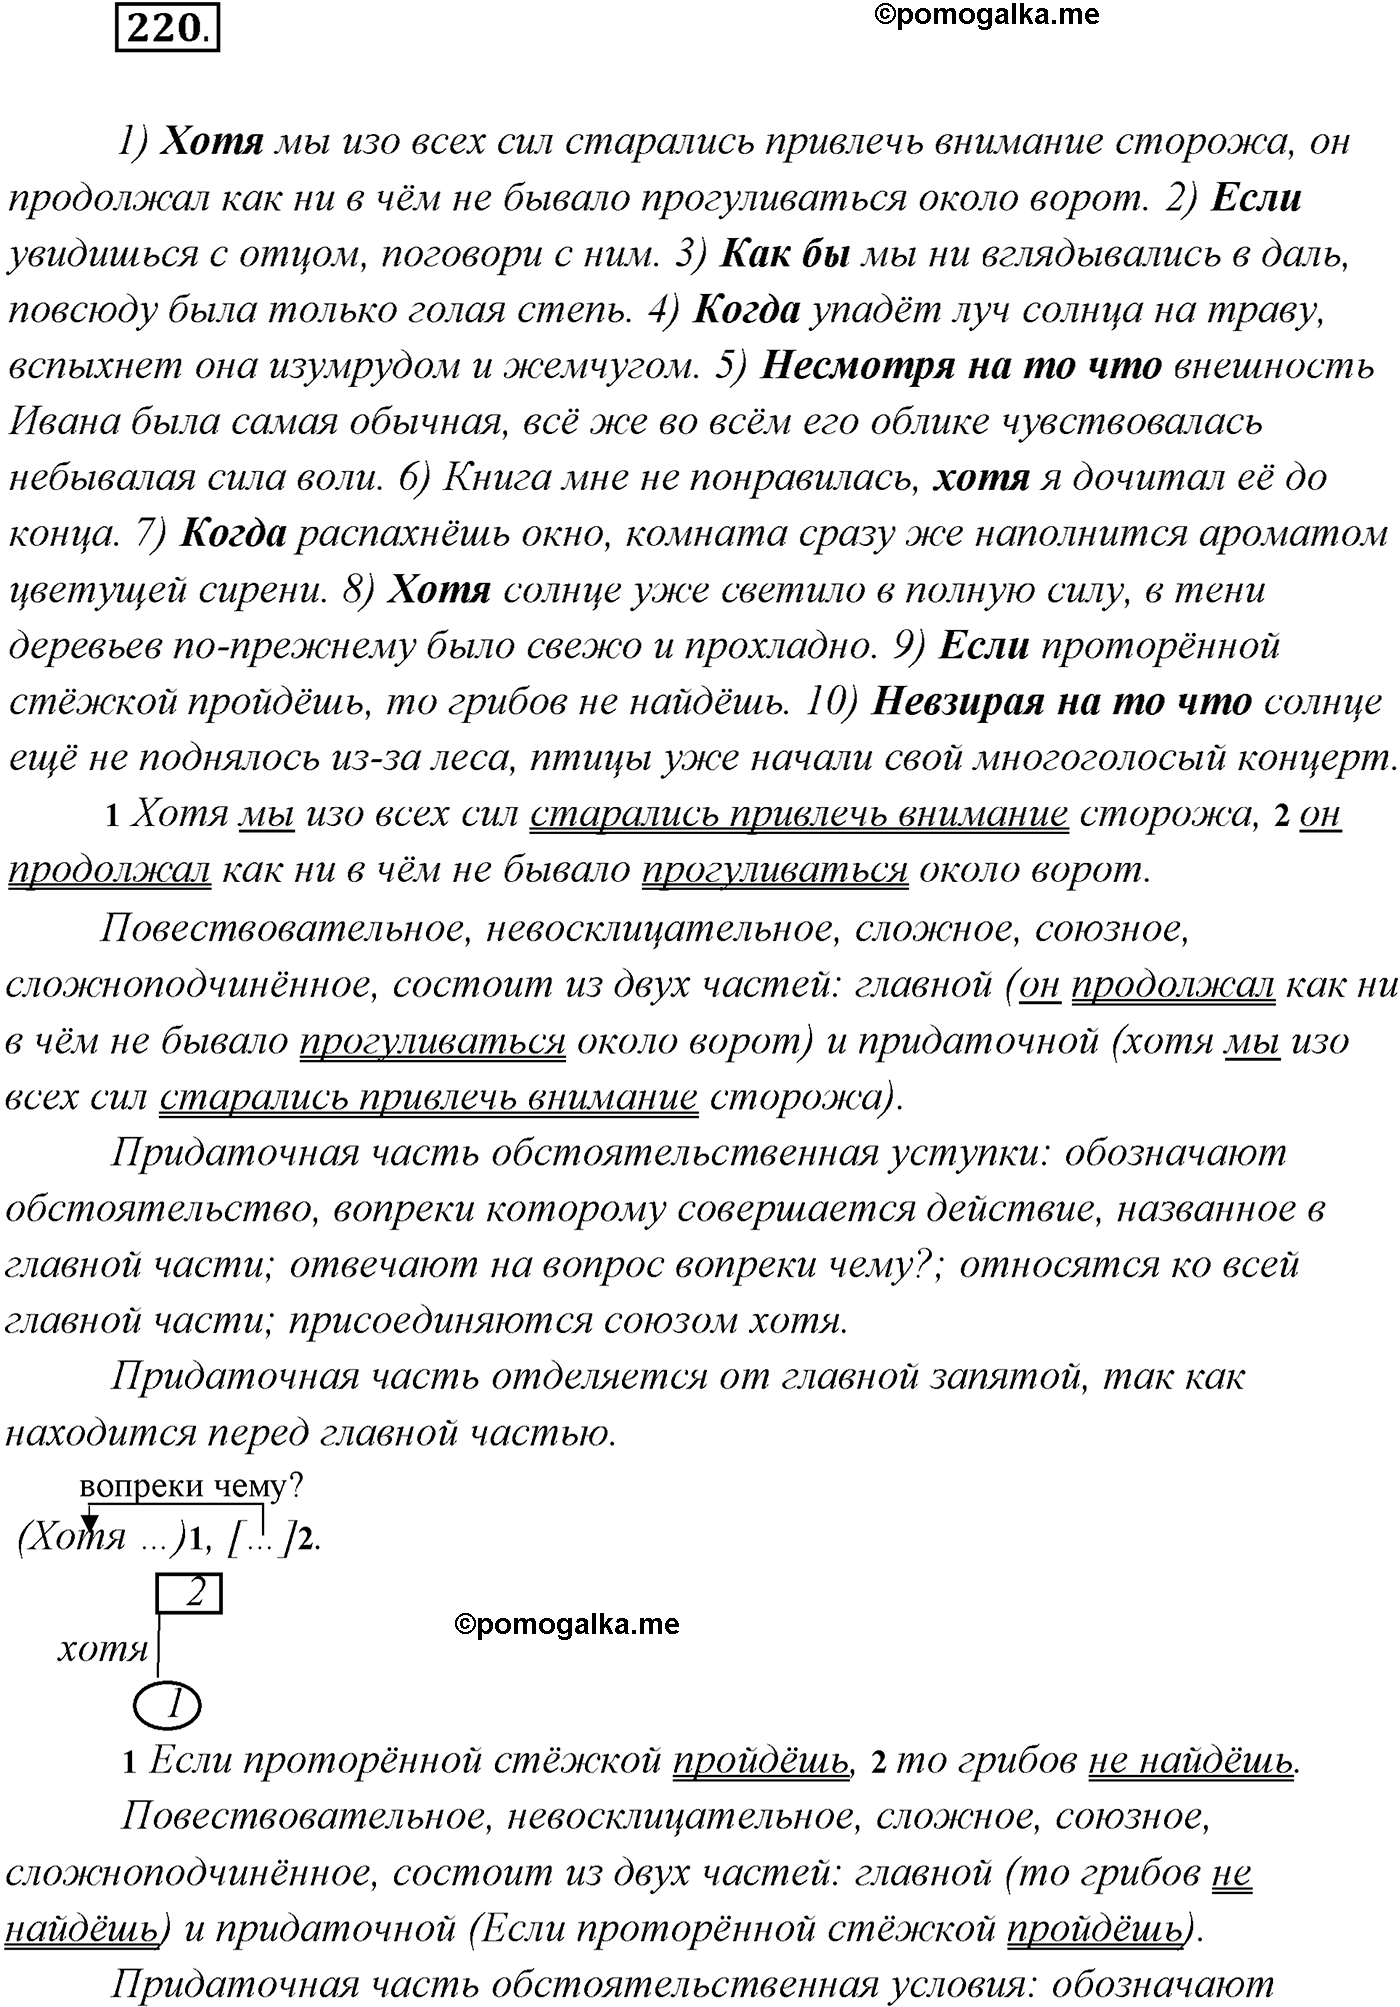 упражнение №220 русский язык 9 класс Рыбченкова, Александрова